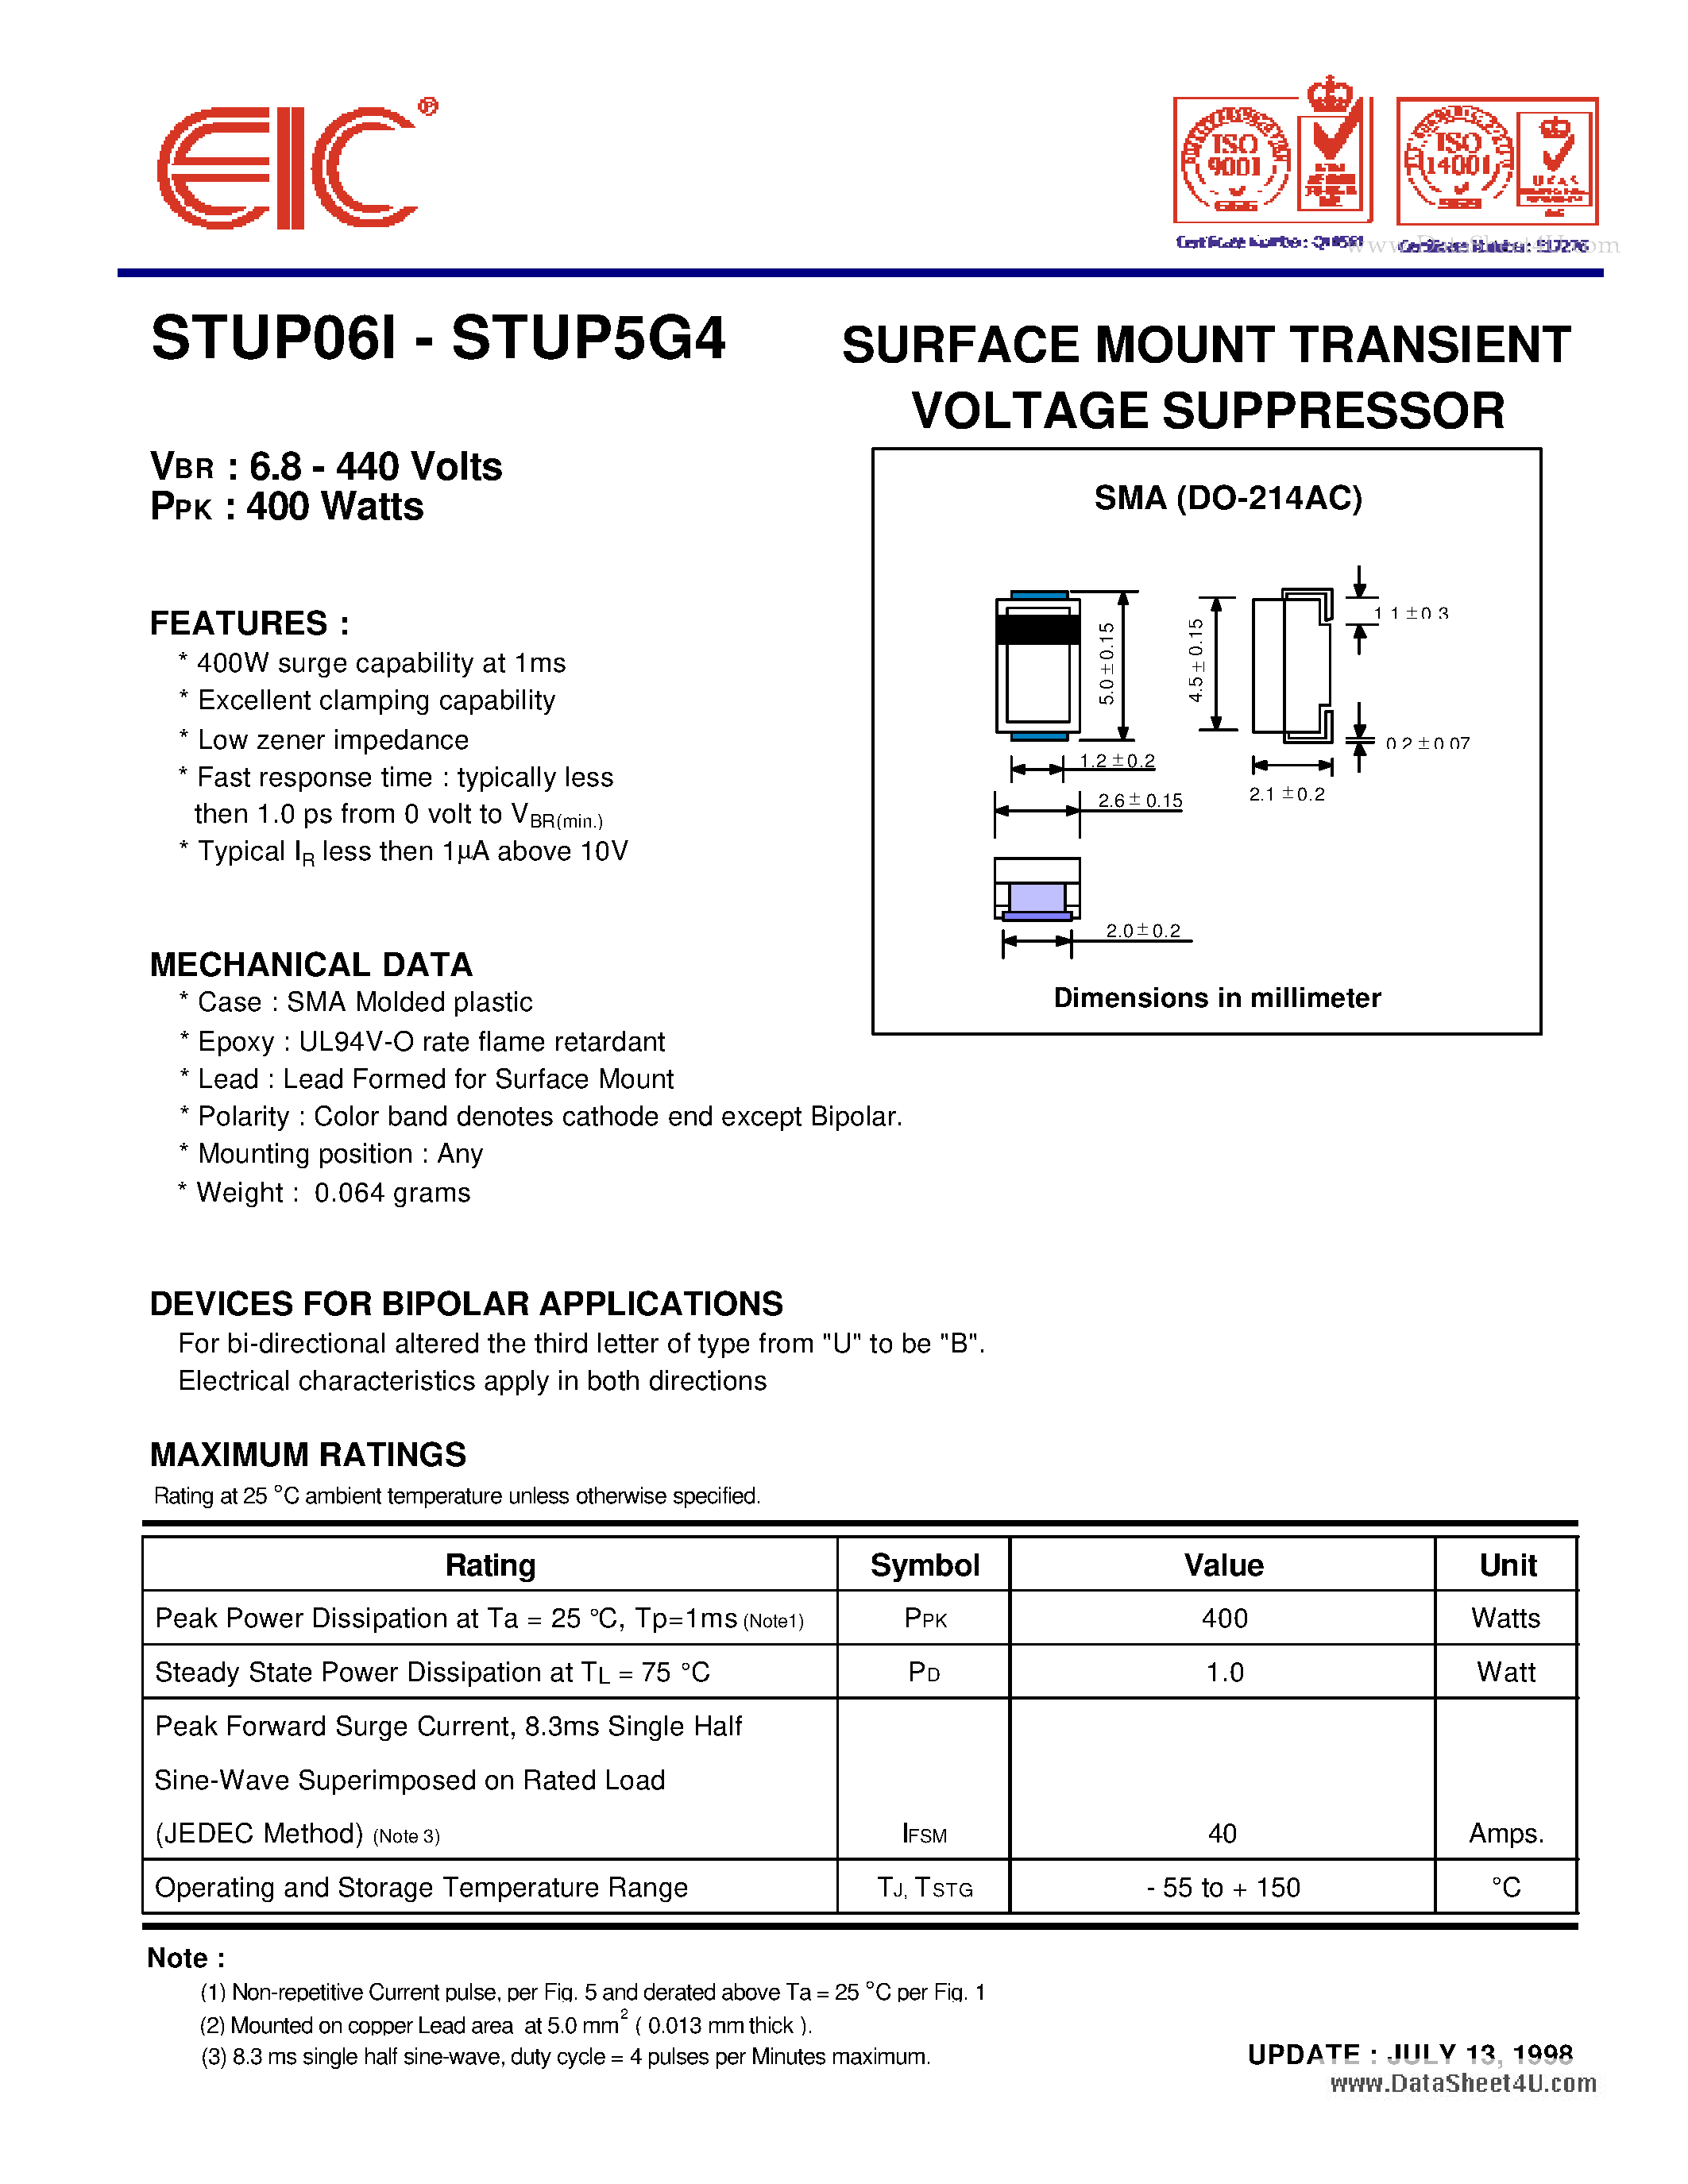 Даташит STUP010 - (STUP06I - STUP5G4) SURFACE MOUNT TRANSIENT VOLTAGE SUPPRESSOR страница 1